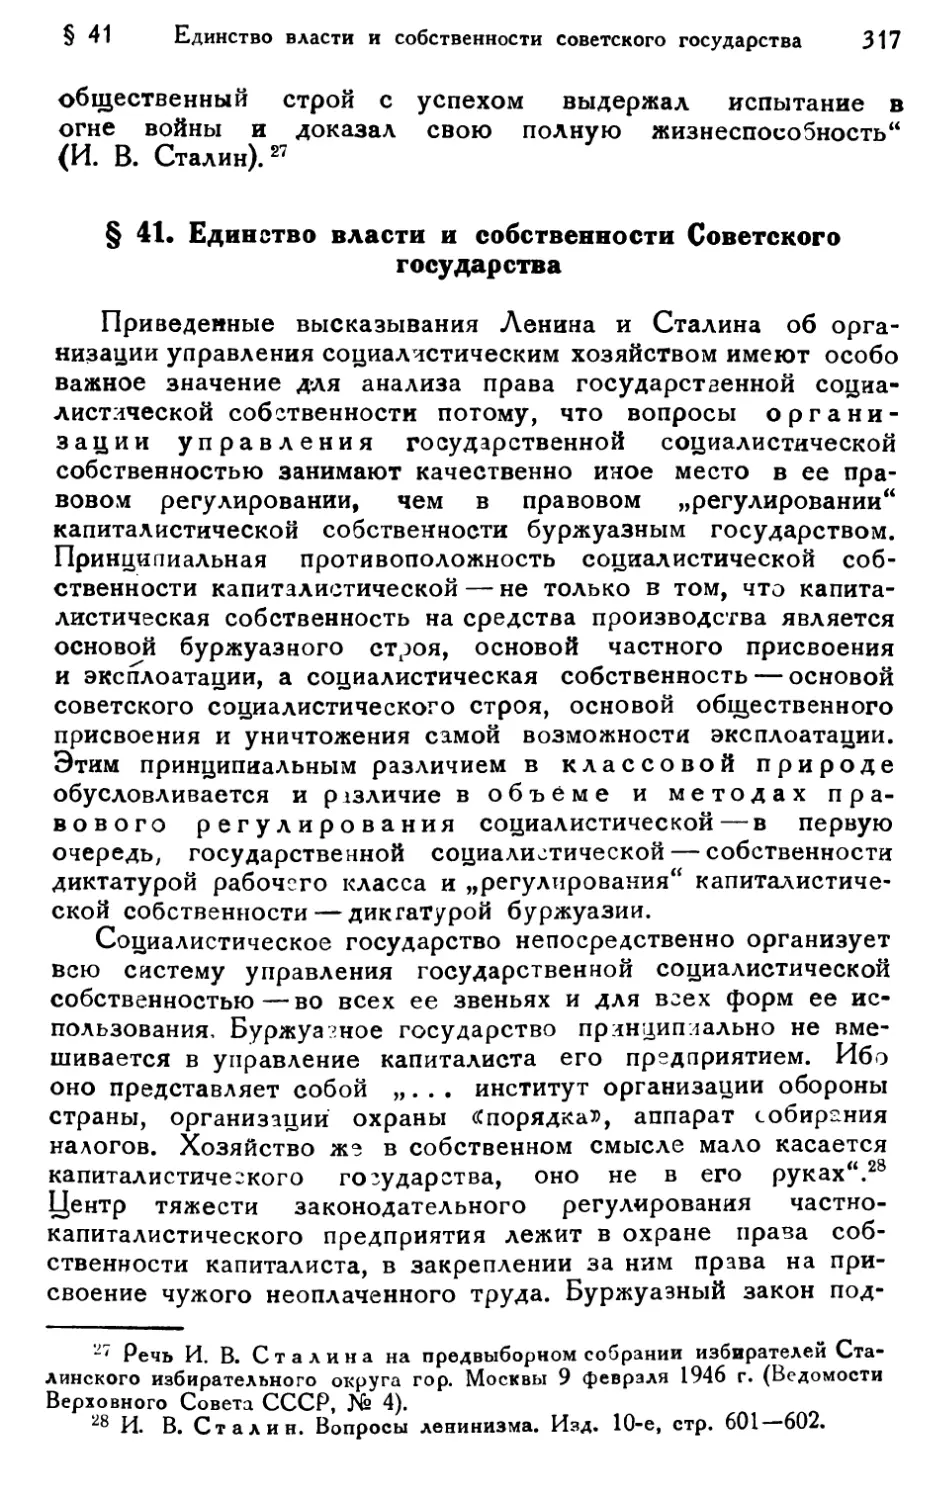 § 41. Единство власти и собственности Советского государства